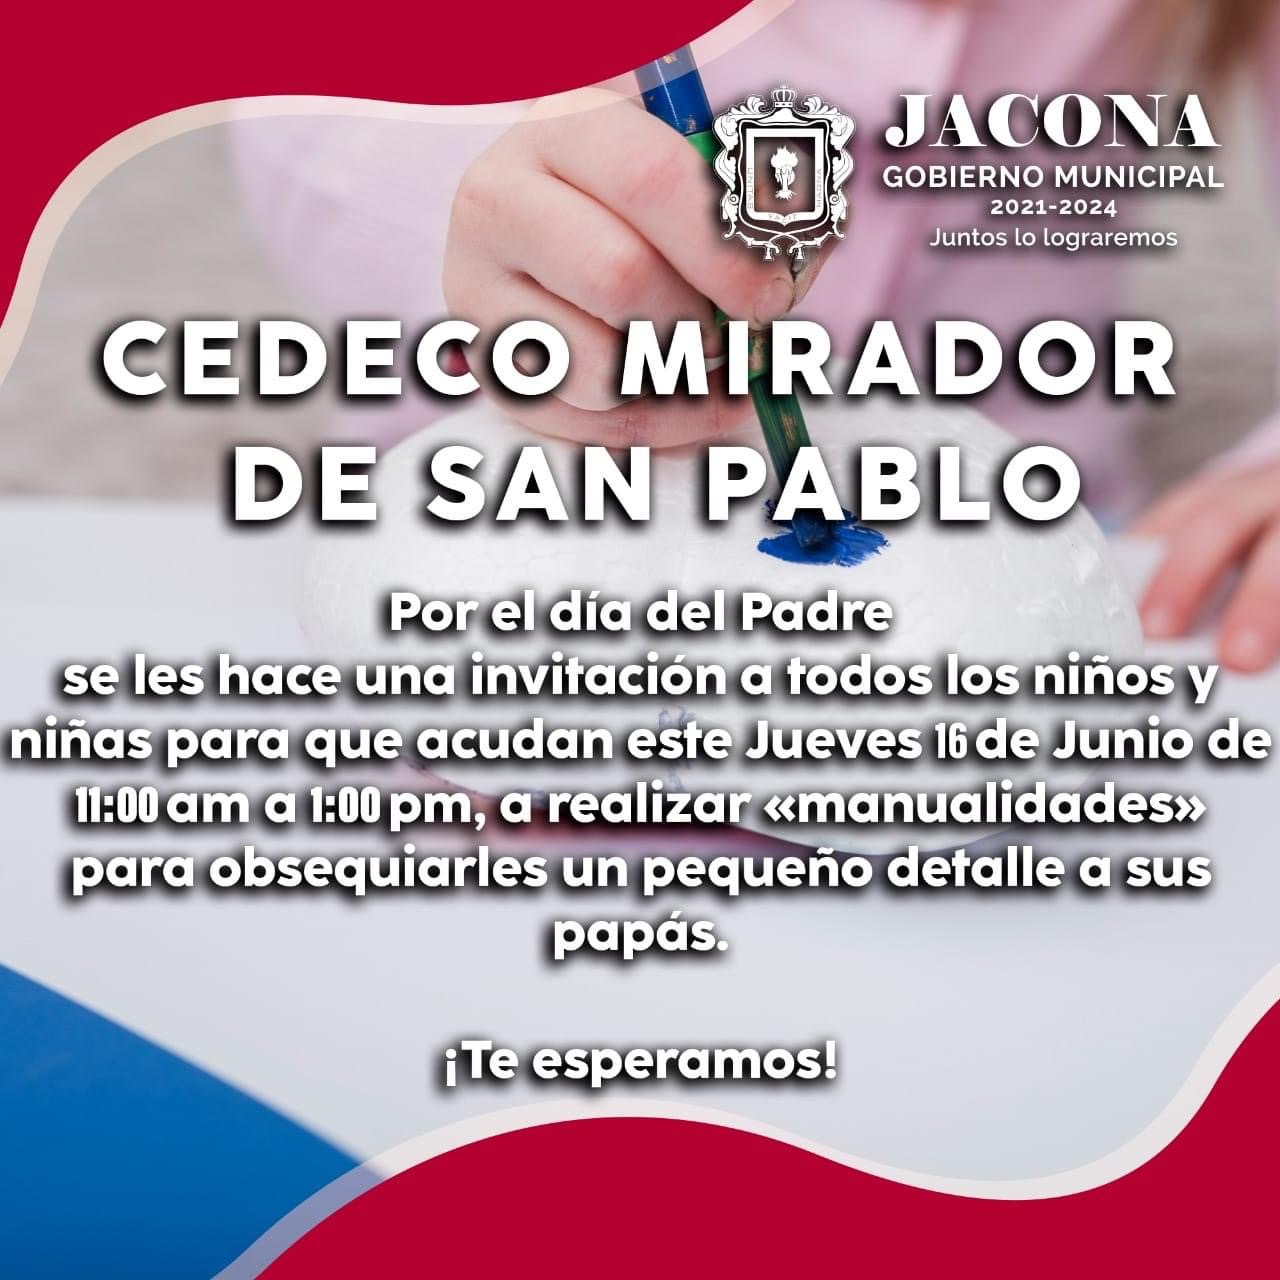 Realizarán Taller de Manualidades en CEDECO San Pablo